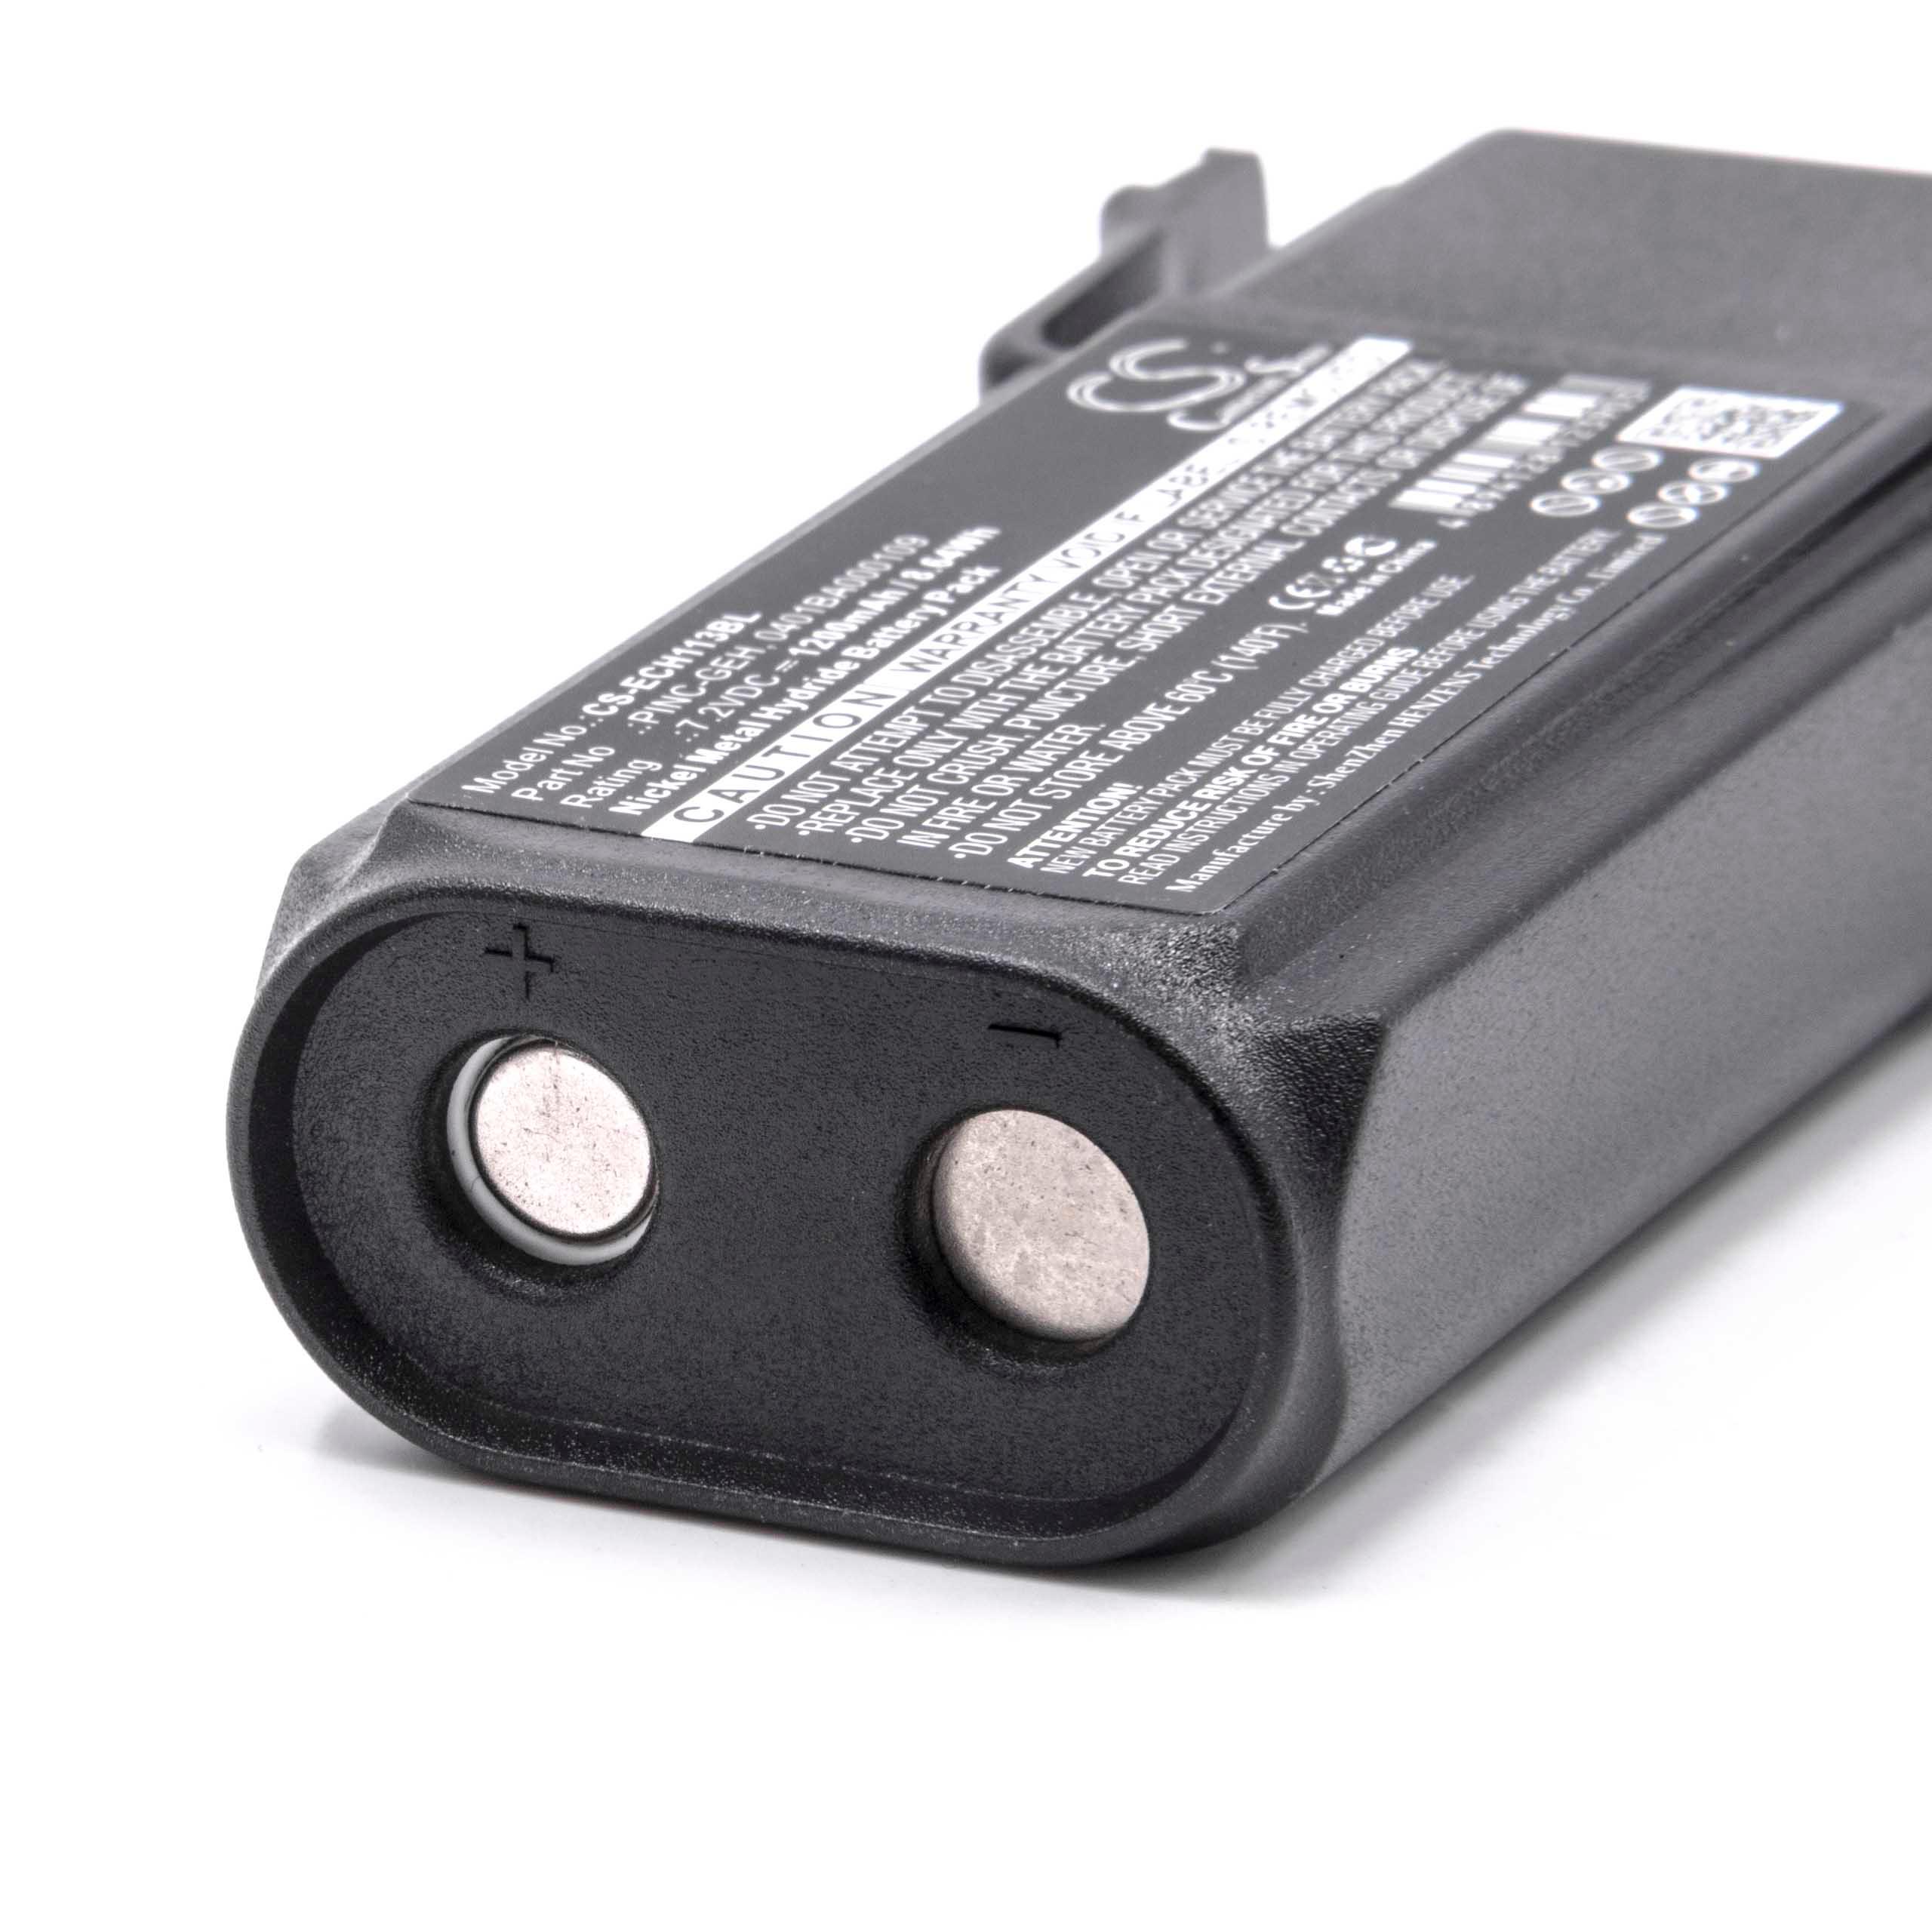 Batteria per telecomando remote controller sostituisce Elca 0401BA000109, 04.142 Elca - 1200mAh 7,2V NiMH